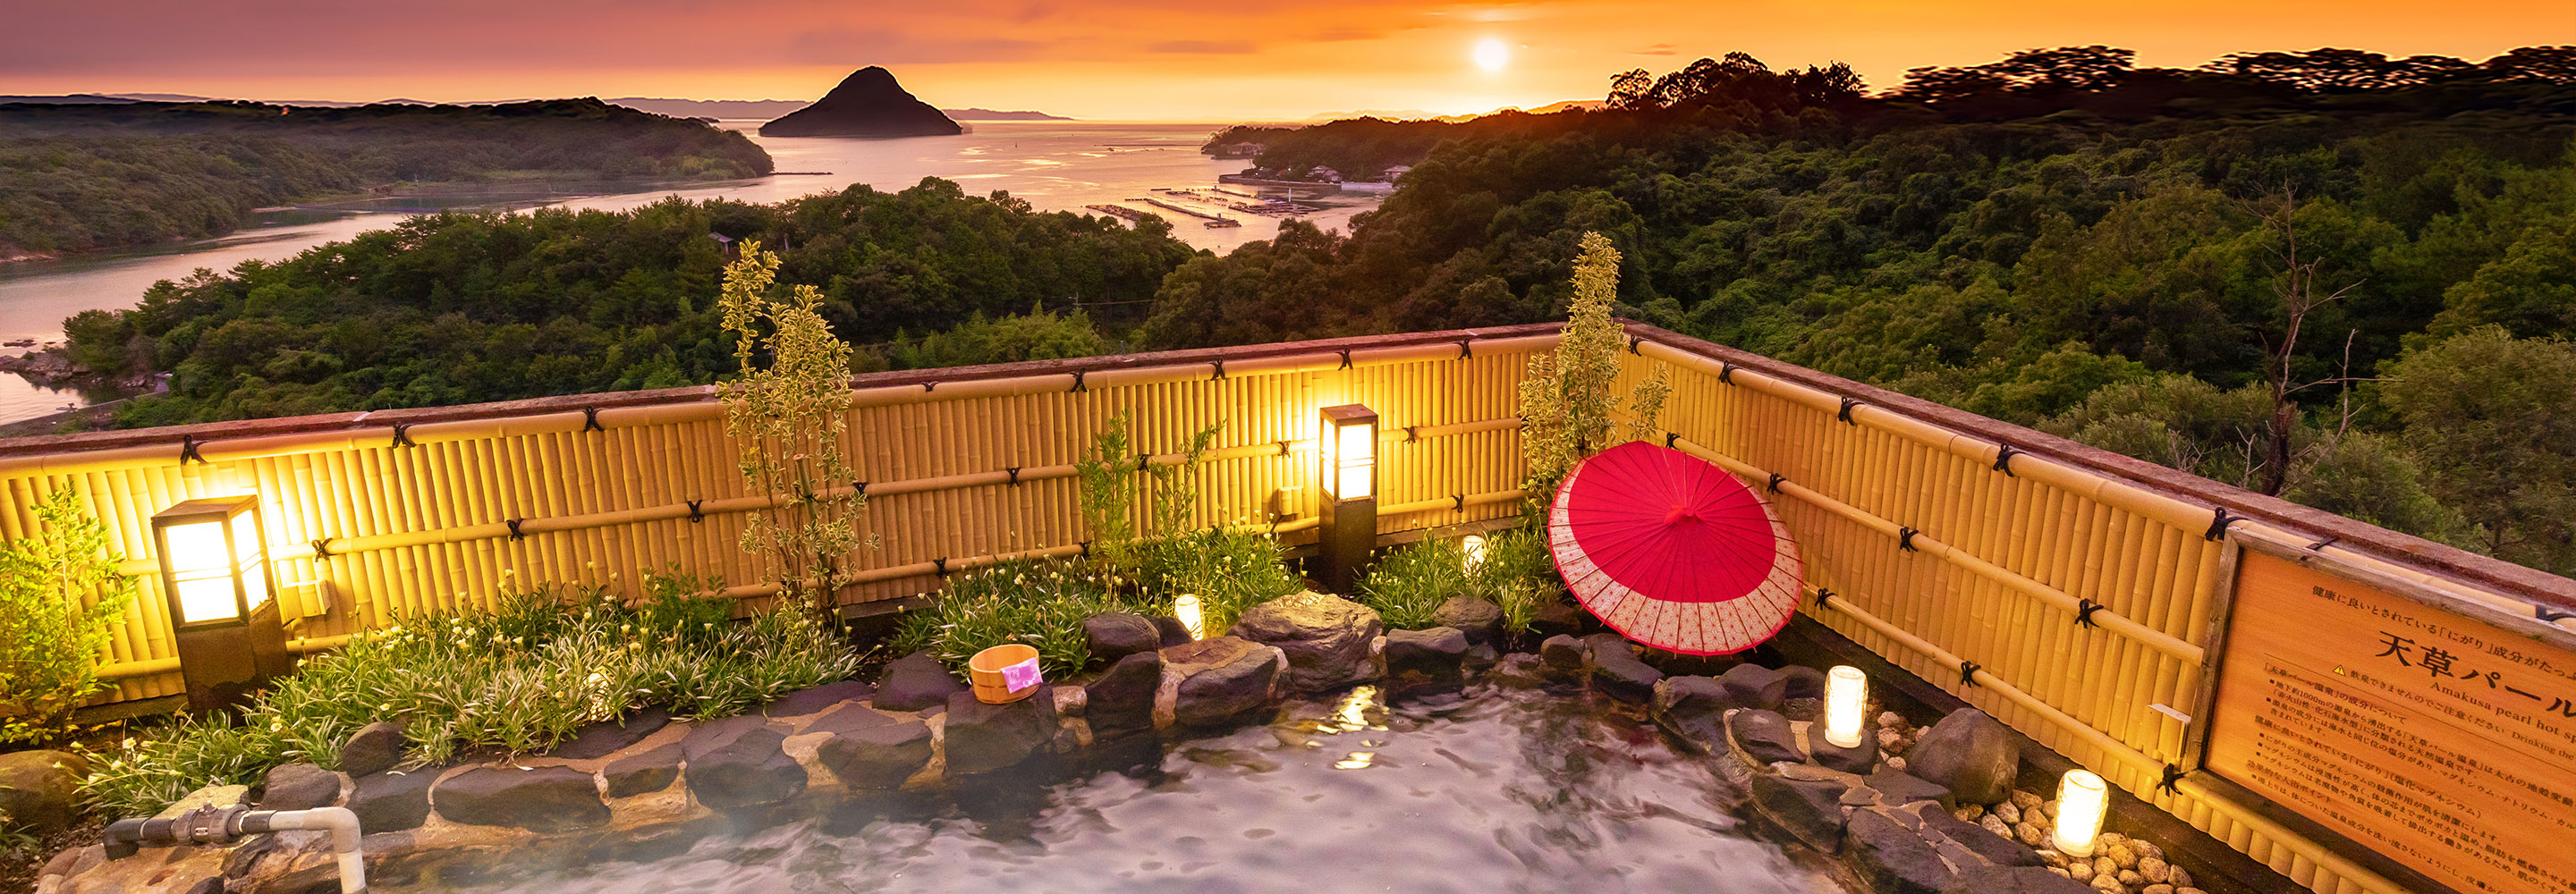 天草富士を一望する露天風呂と、海鮮グルメバイキングを楽しむ温泉ホテル